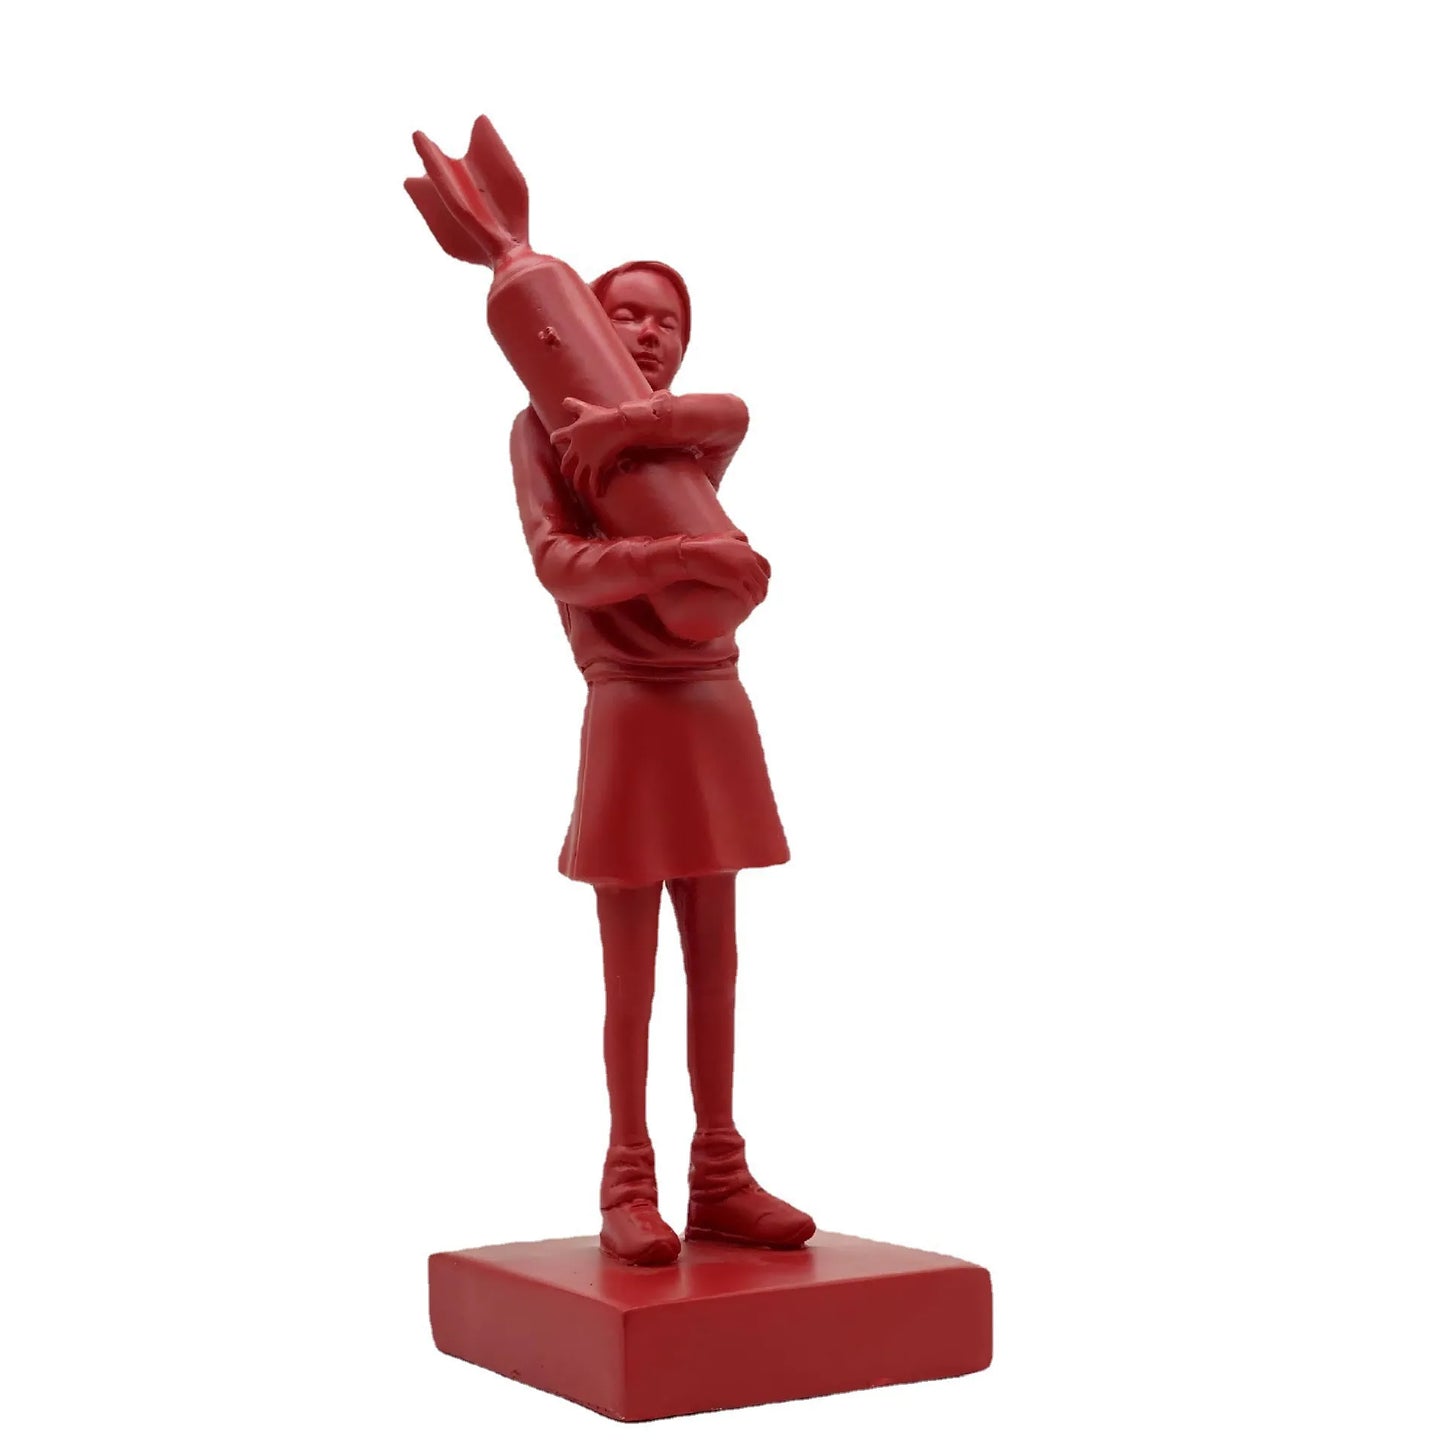 Nouveau Banksy câlin bombe fille résine Statue Sculpture décoration de la maison Hugger câlin paix bombe fille accessoires salon décor